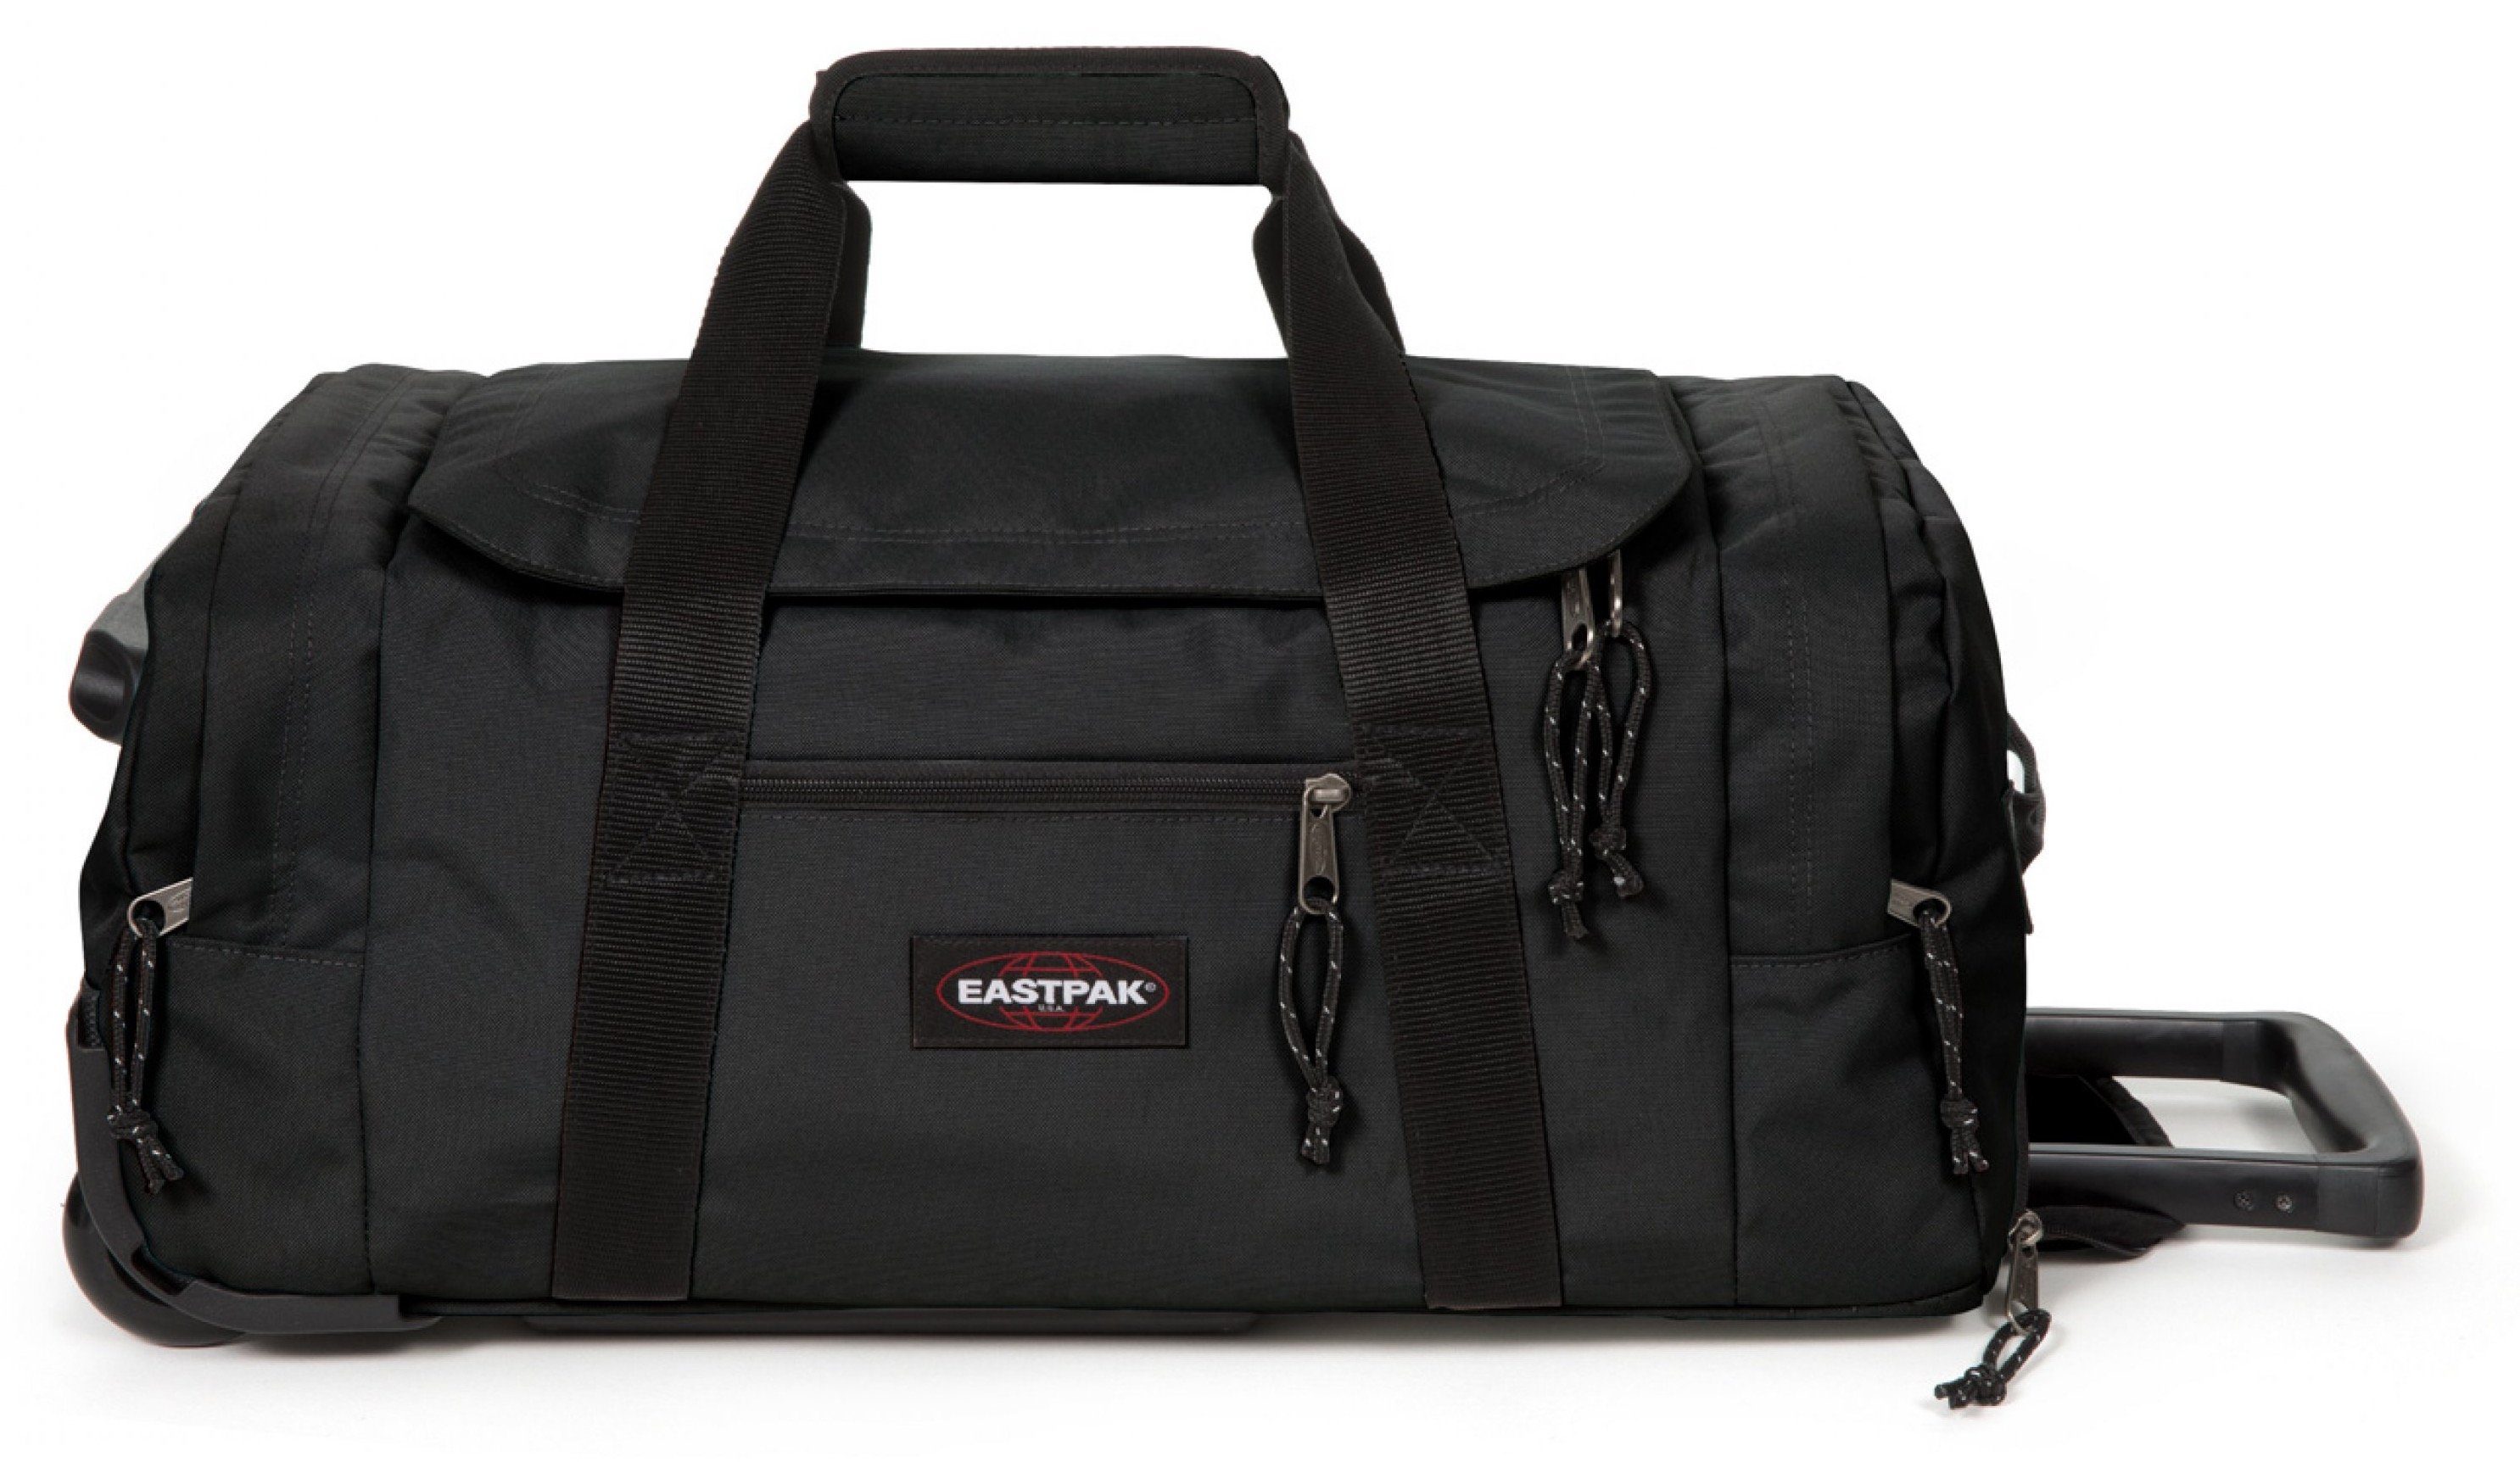 Eastpak Weichgepäck-Trolley Leatherface Platz black S 2 Rollen, mit +, ausreichend